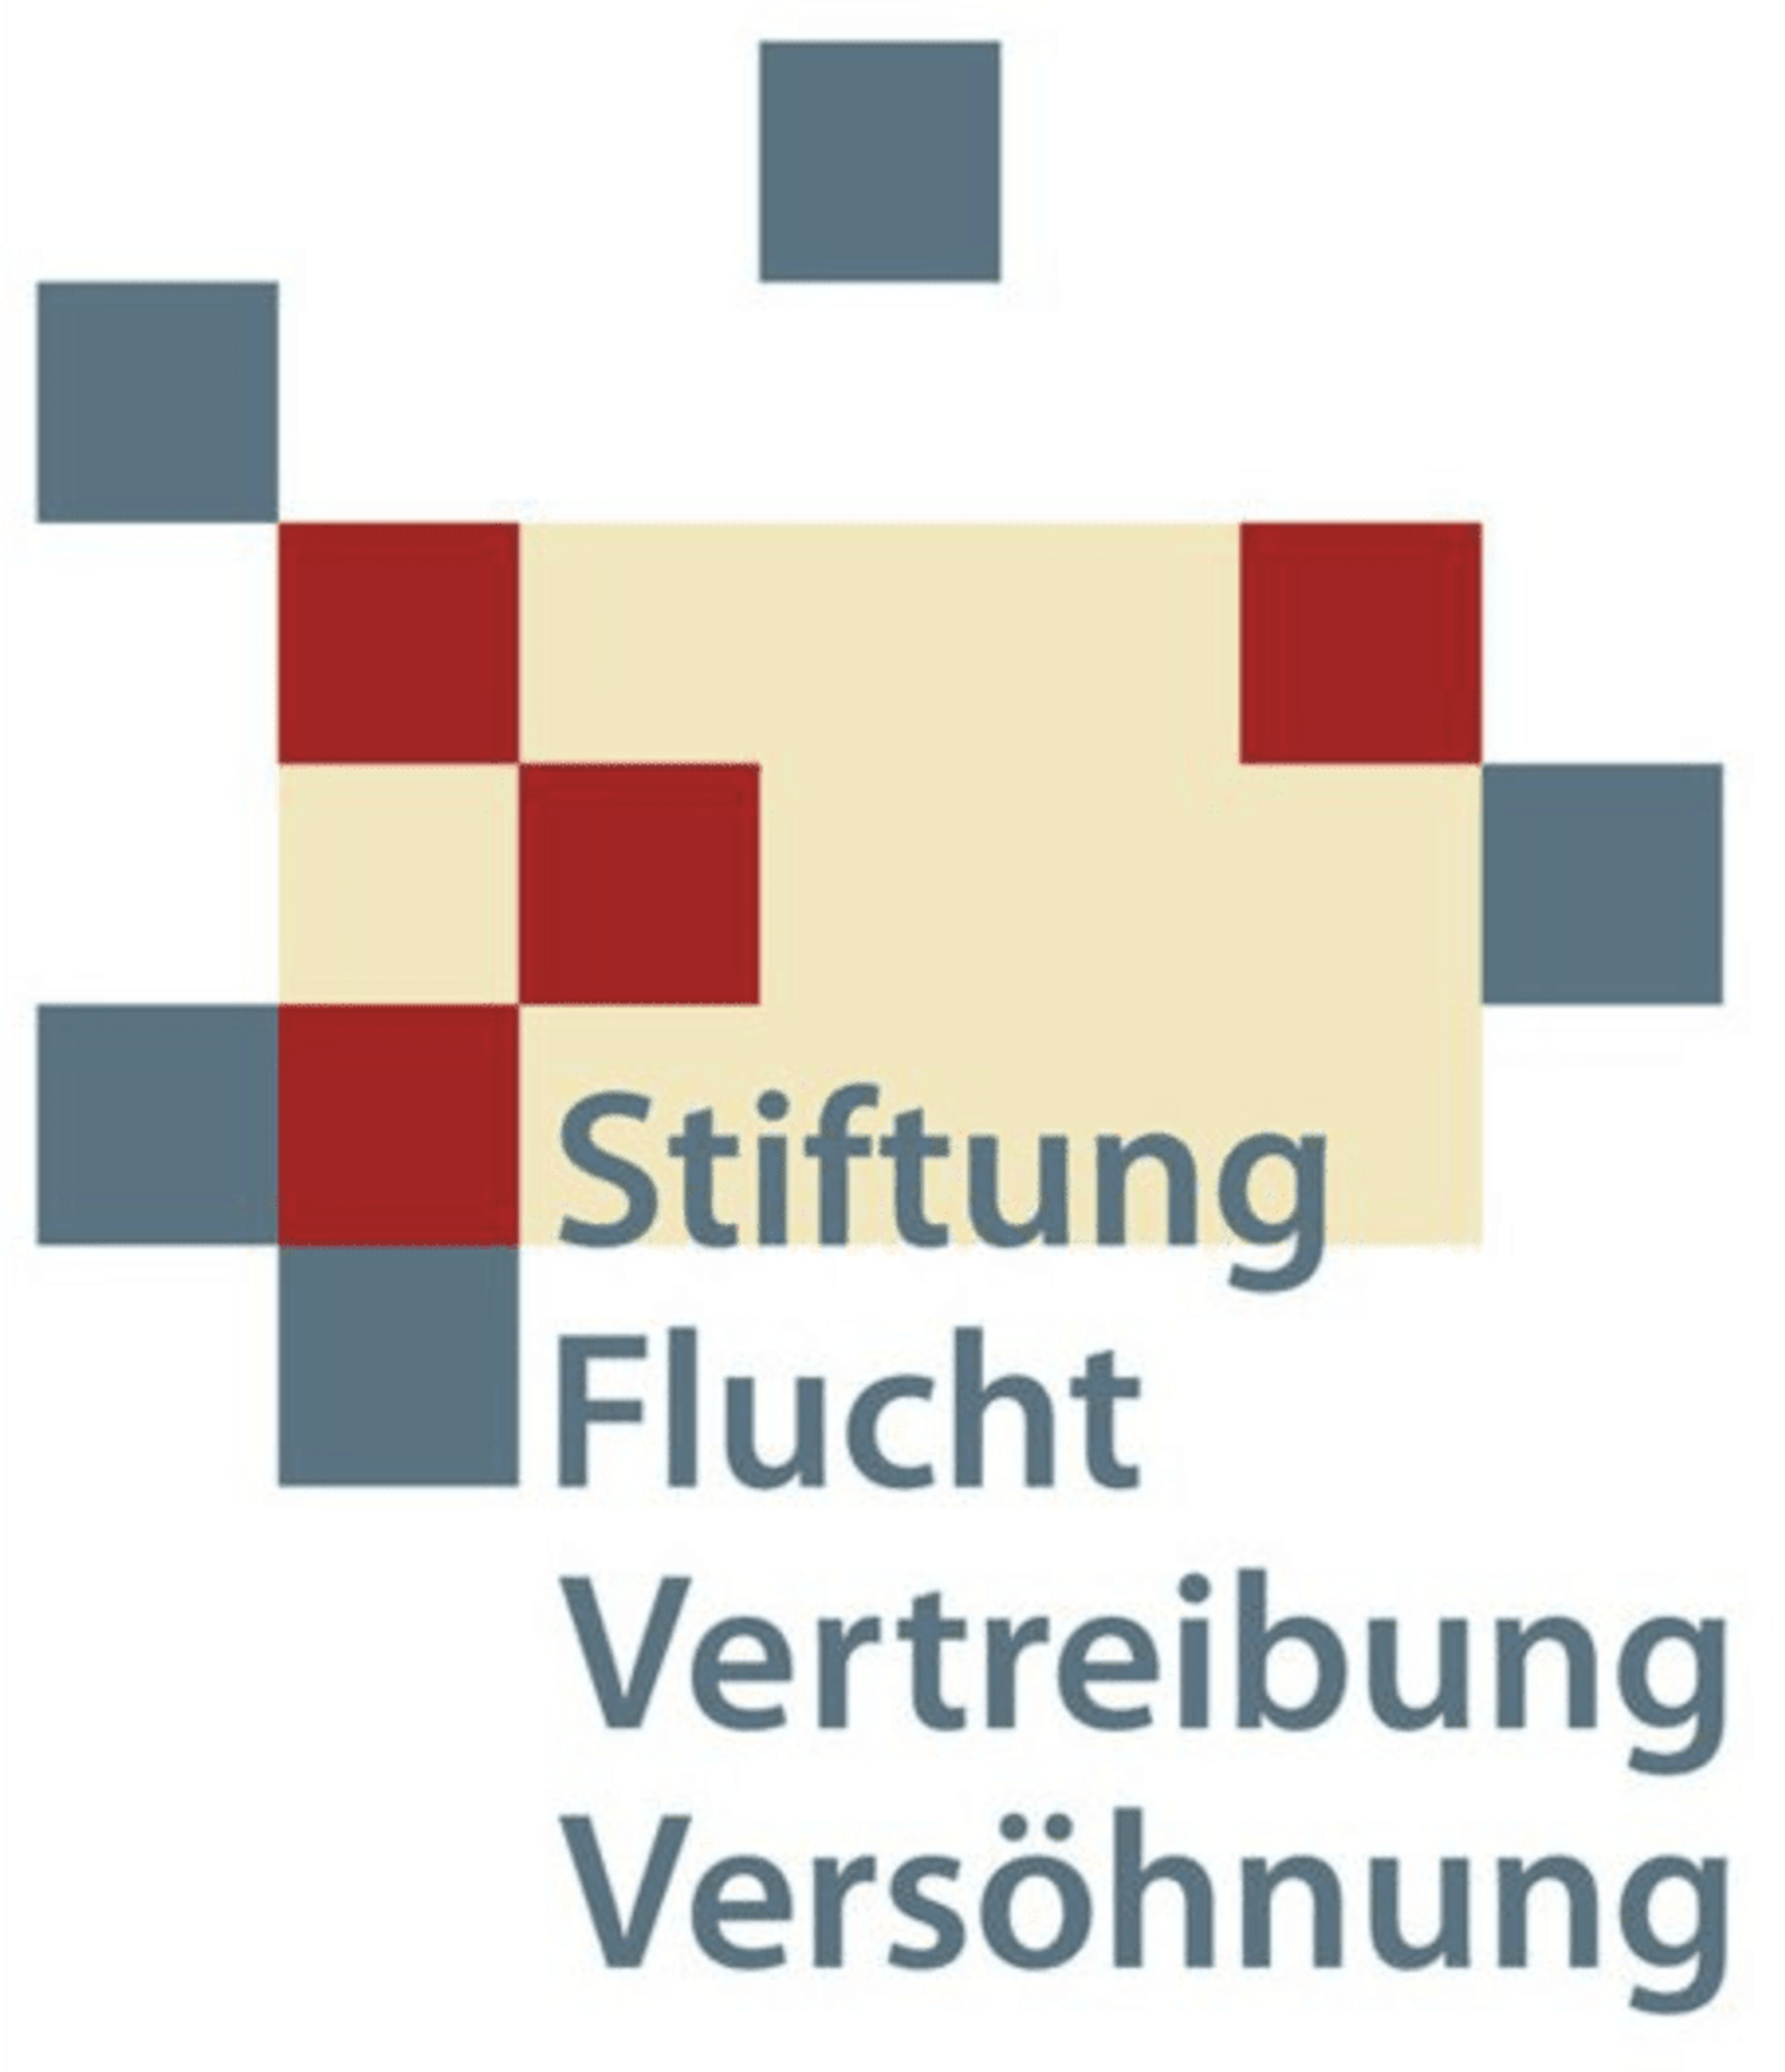 Stiftung Flucht Vertreibung Versöhnung logo